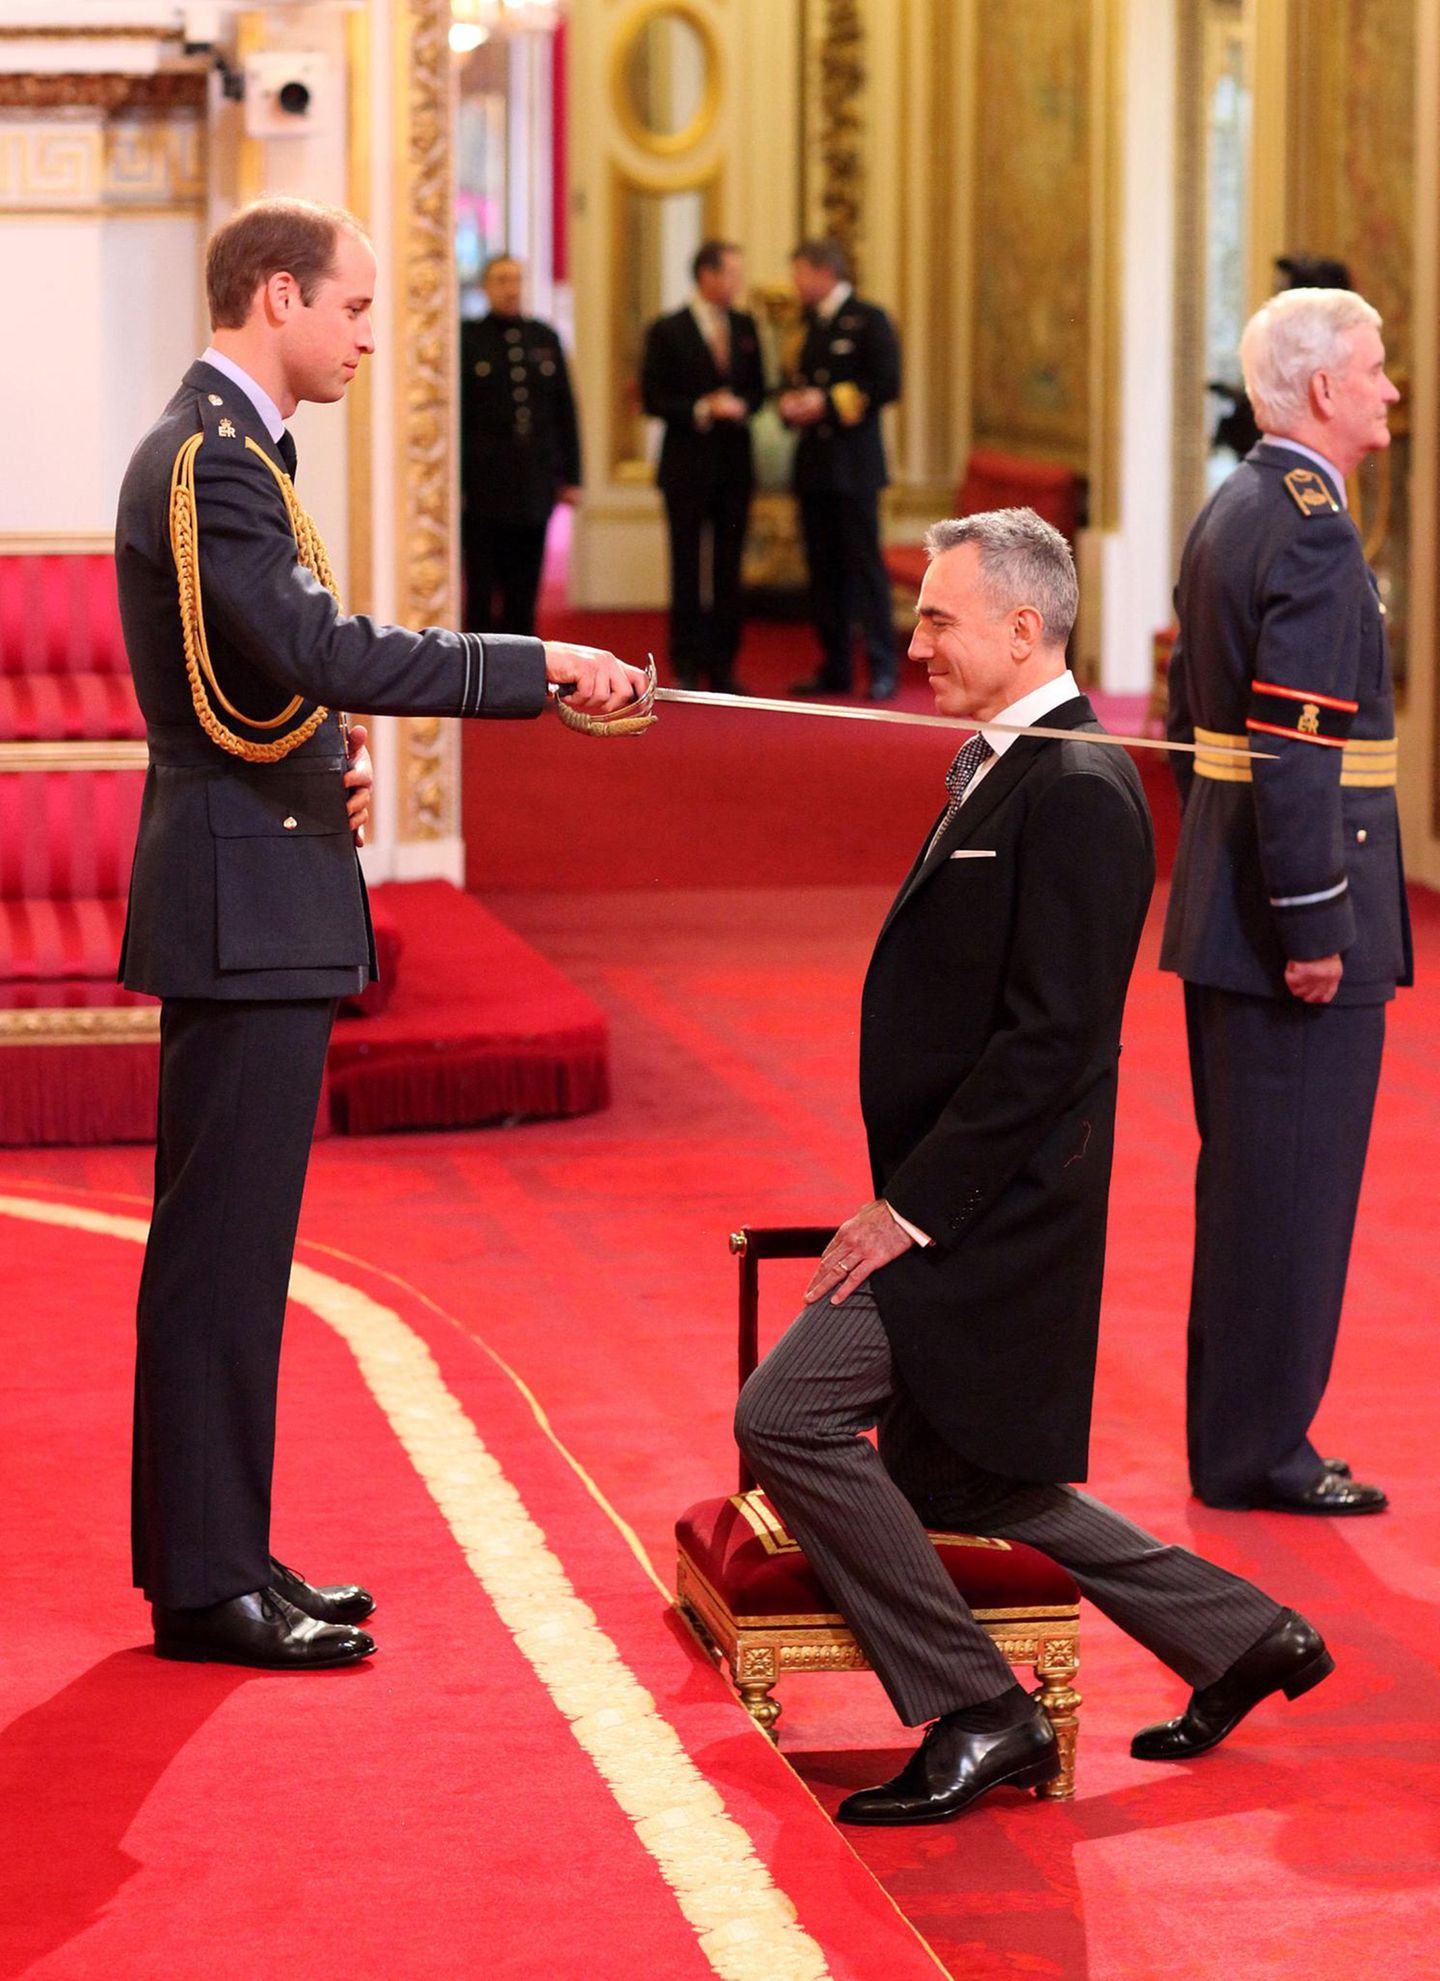 14. November 2014: Prinz William übernimmt im "Buckingham Palace" eine Investitur-Zeremonie. Für Daniel Day-Lewis muss er den Säbel zücken, denn der Schauspieler erhält den Titel "Knight Bachelor of the British Empire".